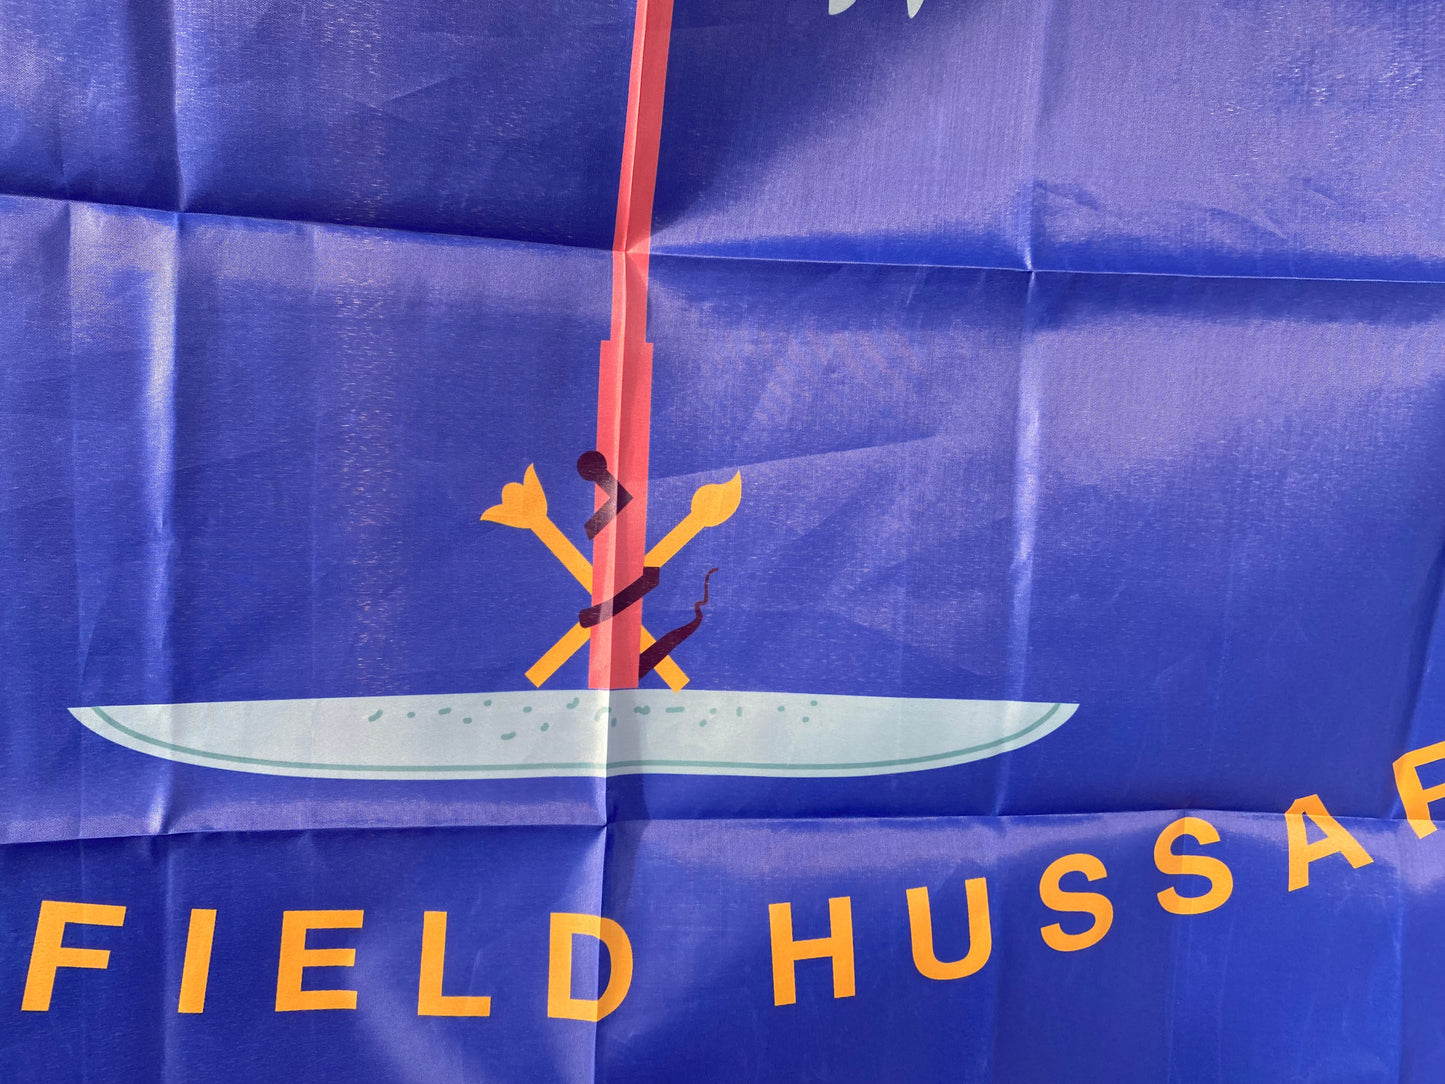 Edgefield Hussars - Hampton's Legion House Flag